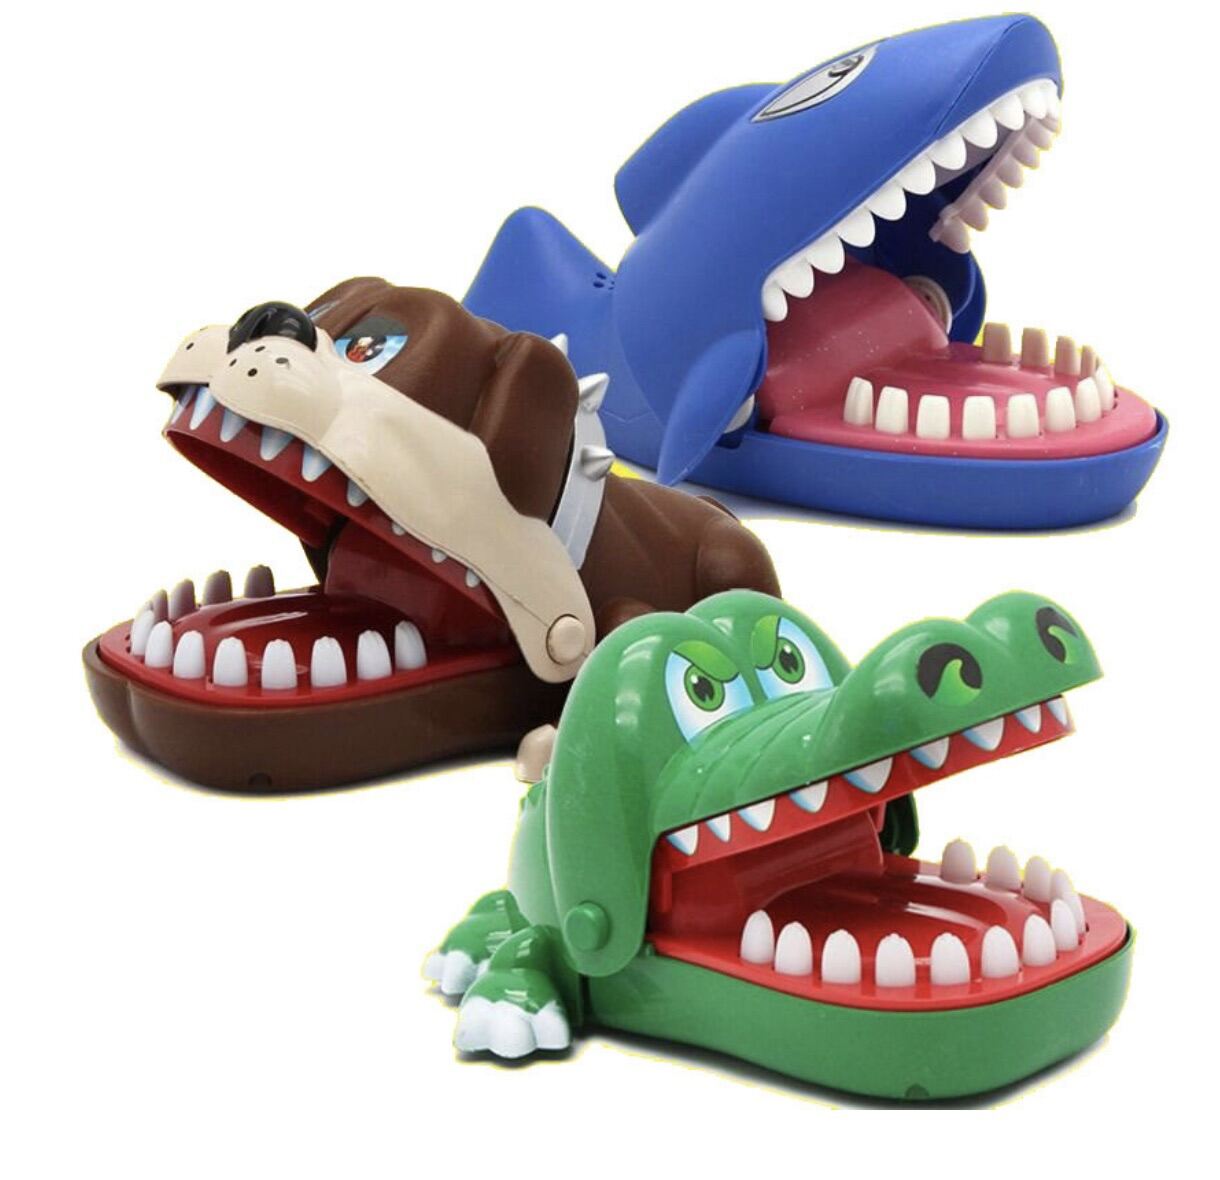 Đồ chơi cá sấu -chó -cá mập cắn tay khám răng thú vị cho bé -đồ chơi cá sấu nhà khoa-trò chơi cá sấu cắn tay,chó cắn tay.